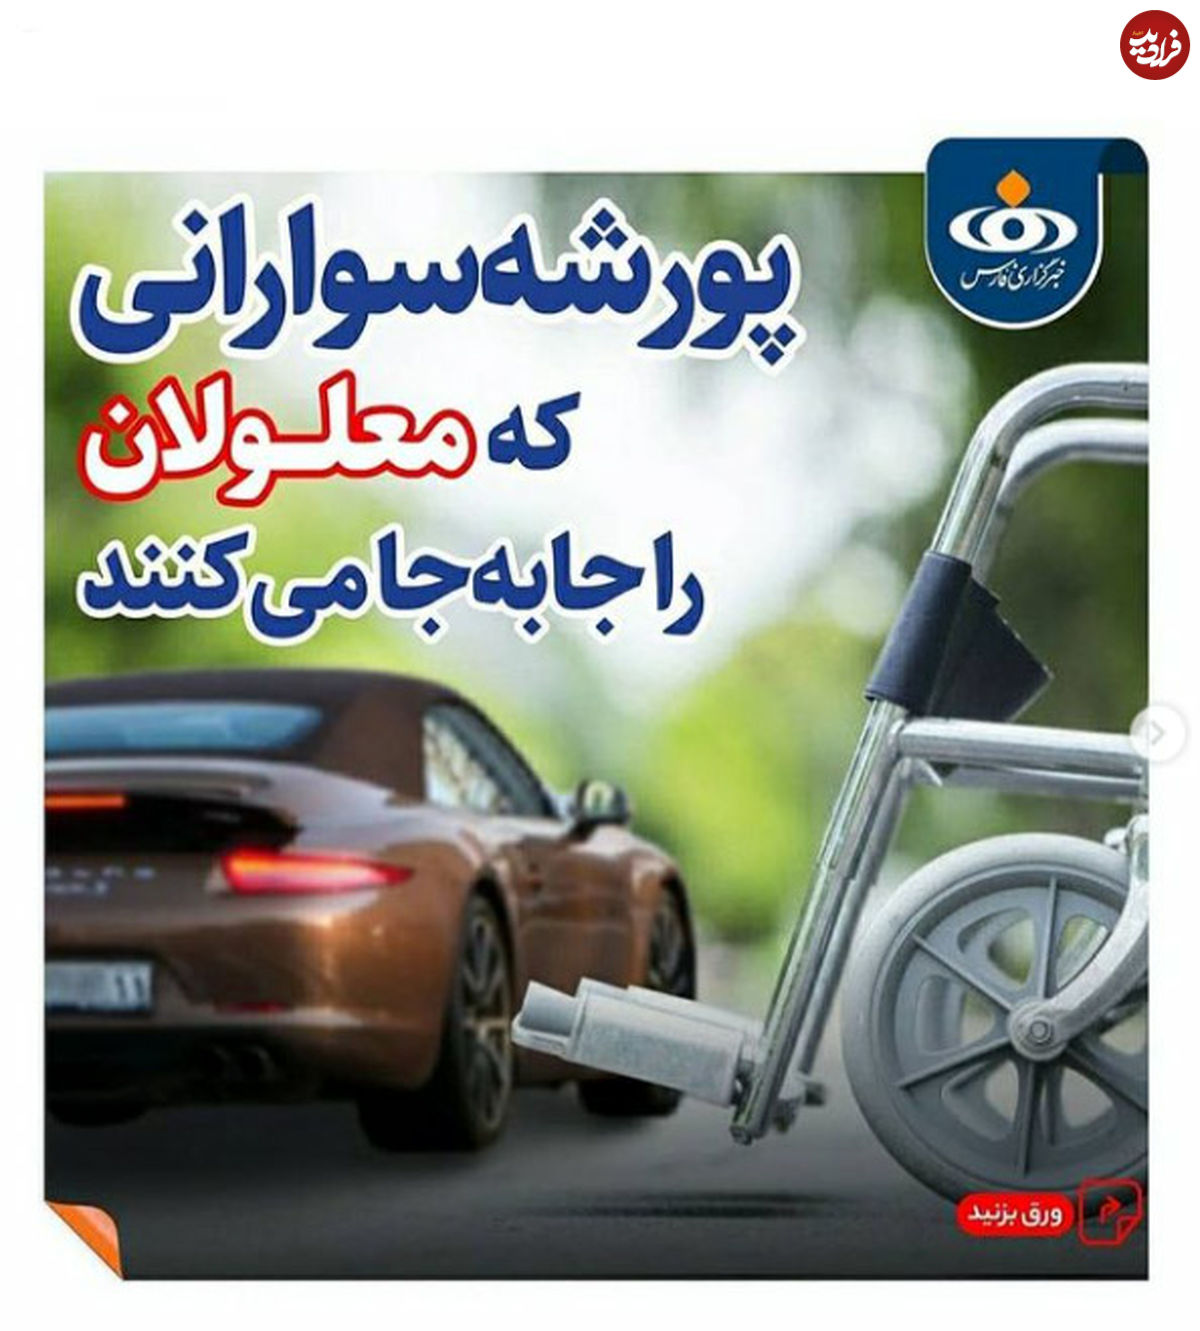 افتتاح اولین تاکسی خیریه دنیا در ایران